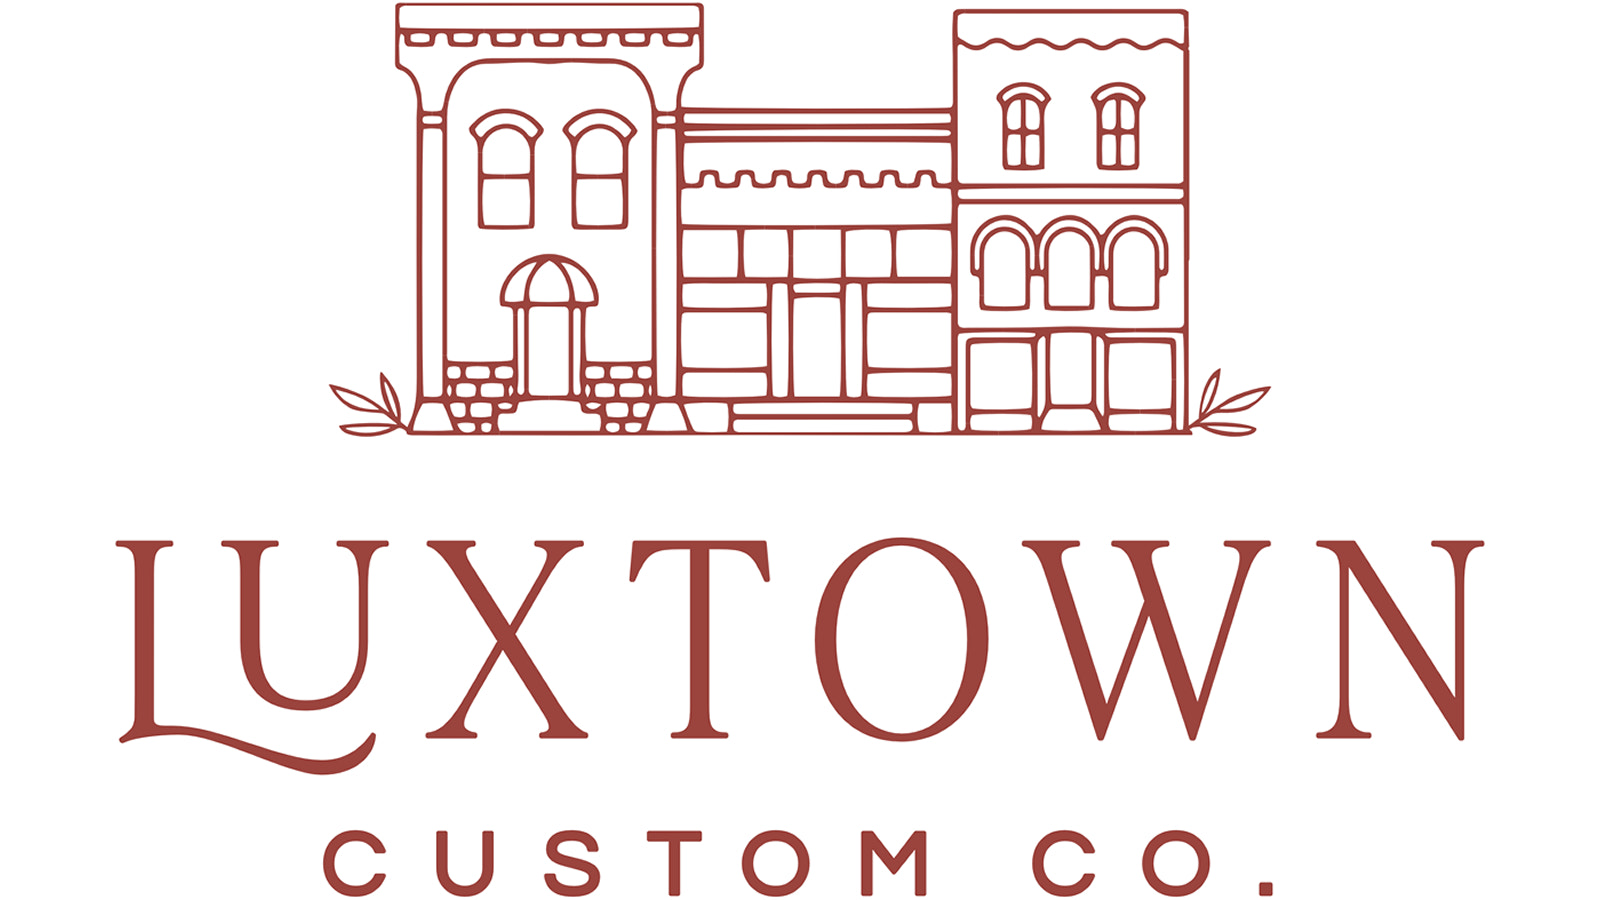 Luxtown brugerdefinerede produkter: små luksusvarer til praktiske priser